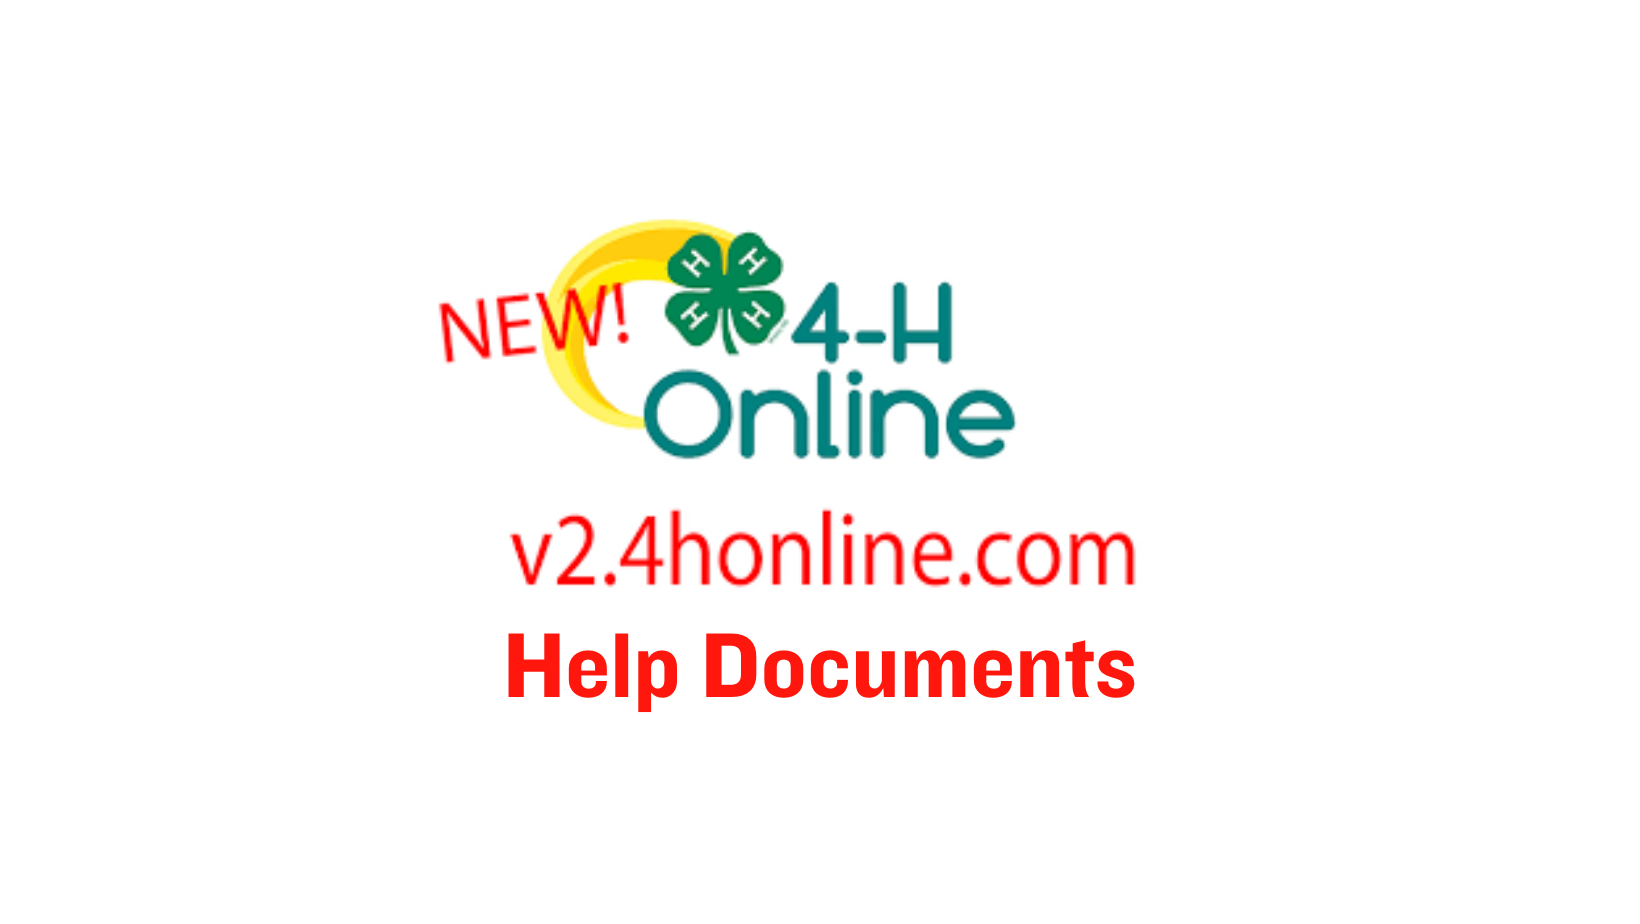 4-H Online Help